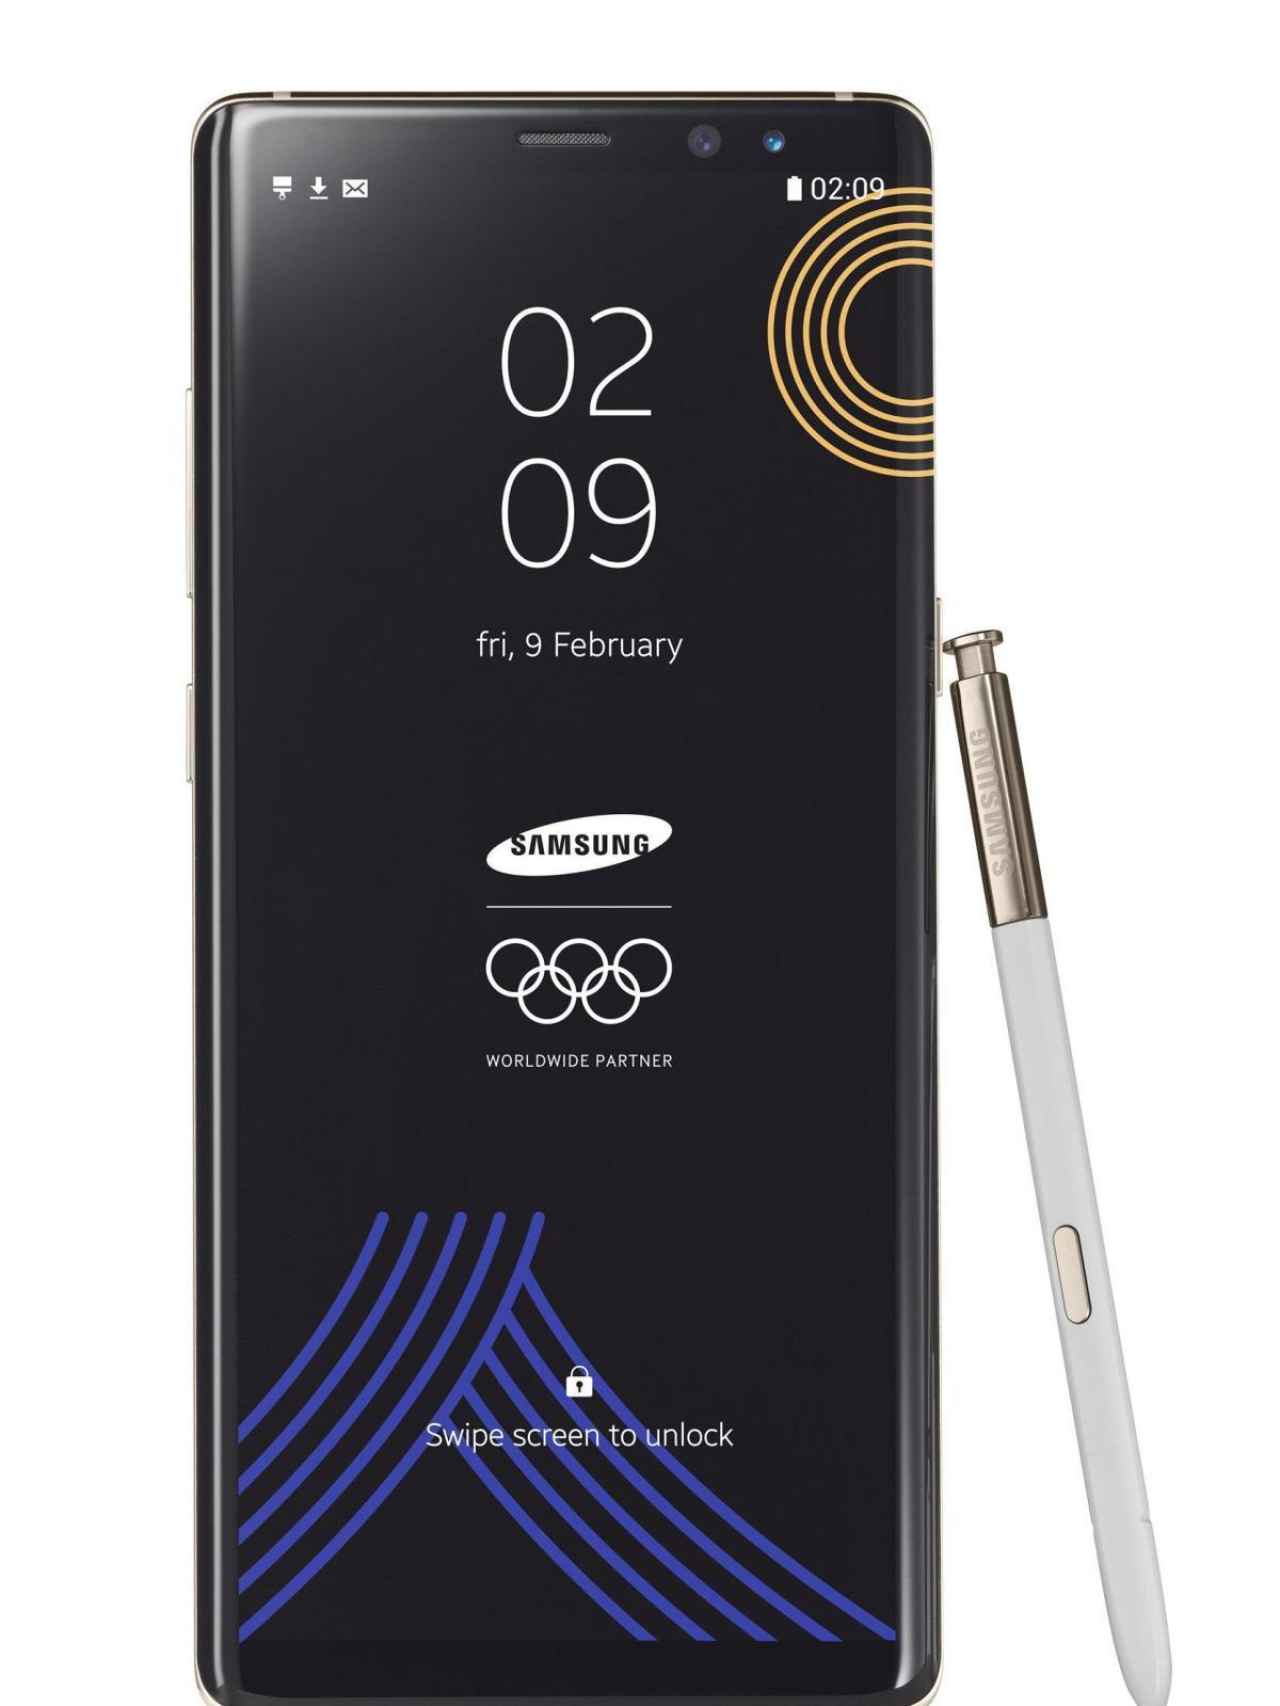 Samsung Galaxy de los Juegos Olímpicos de invierno.